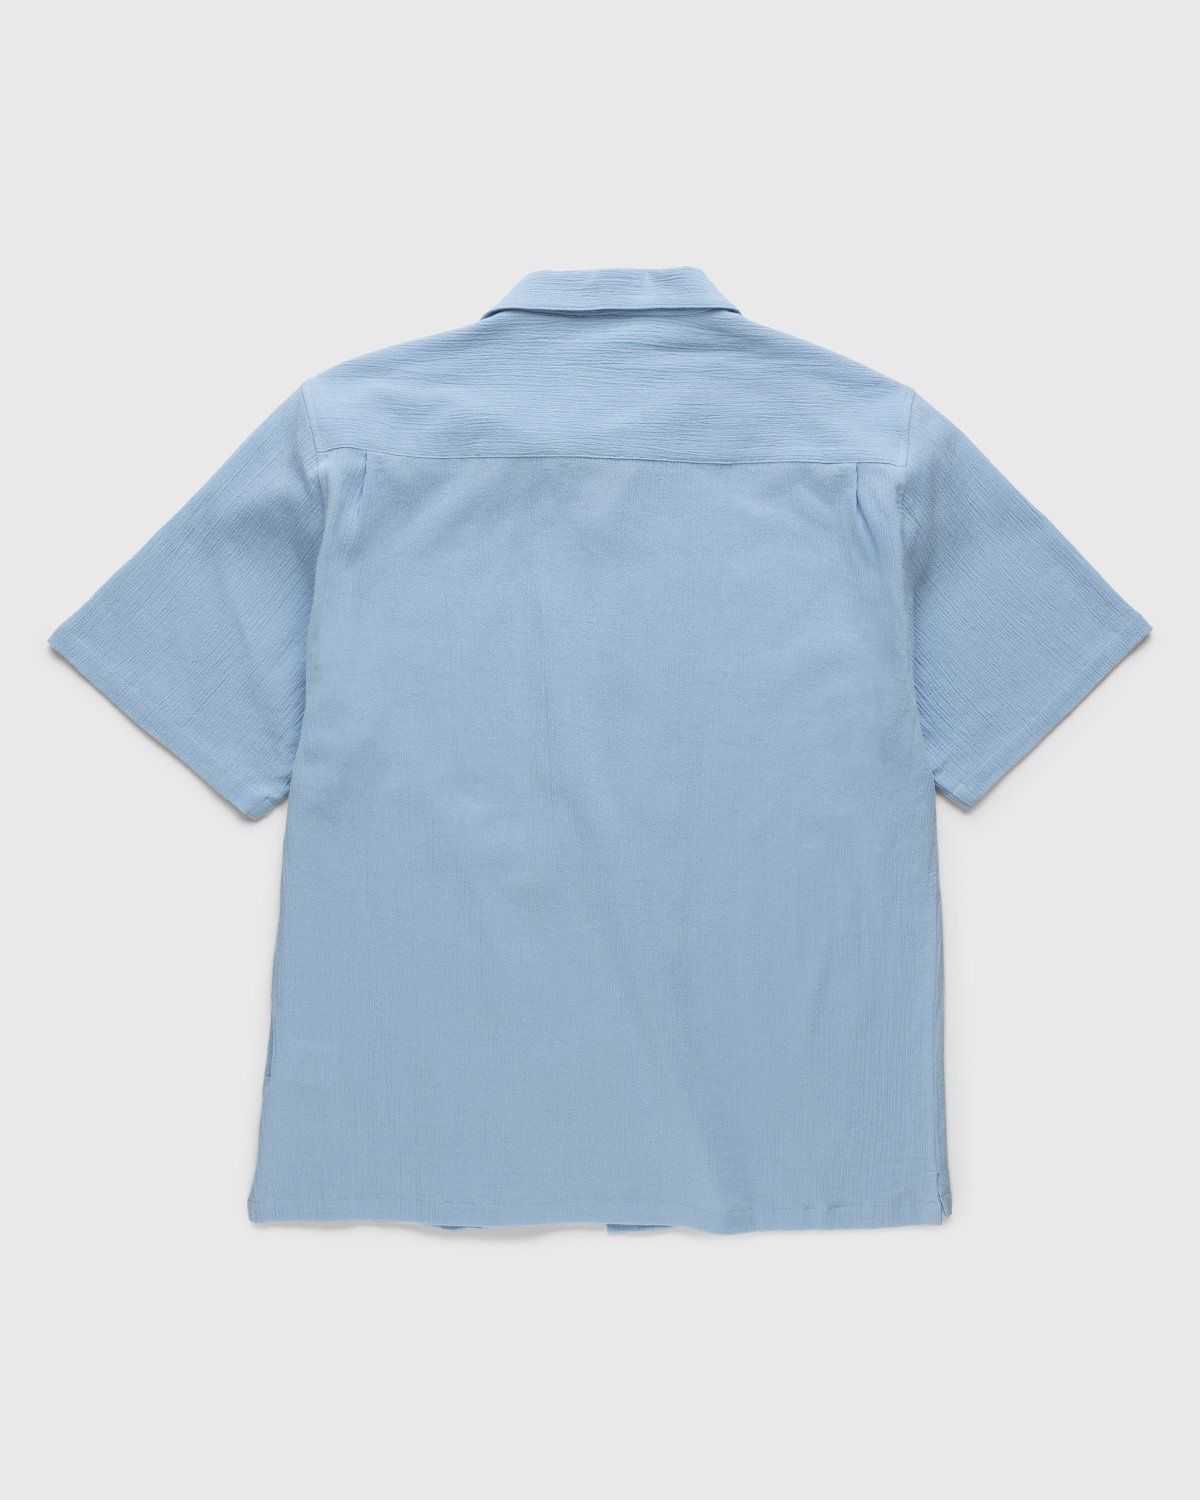 Highsnobiety – Crepe Short Sleeve Shirt Sky Blue - Shirts - Blue - Image 2